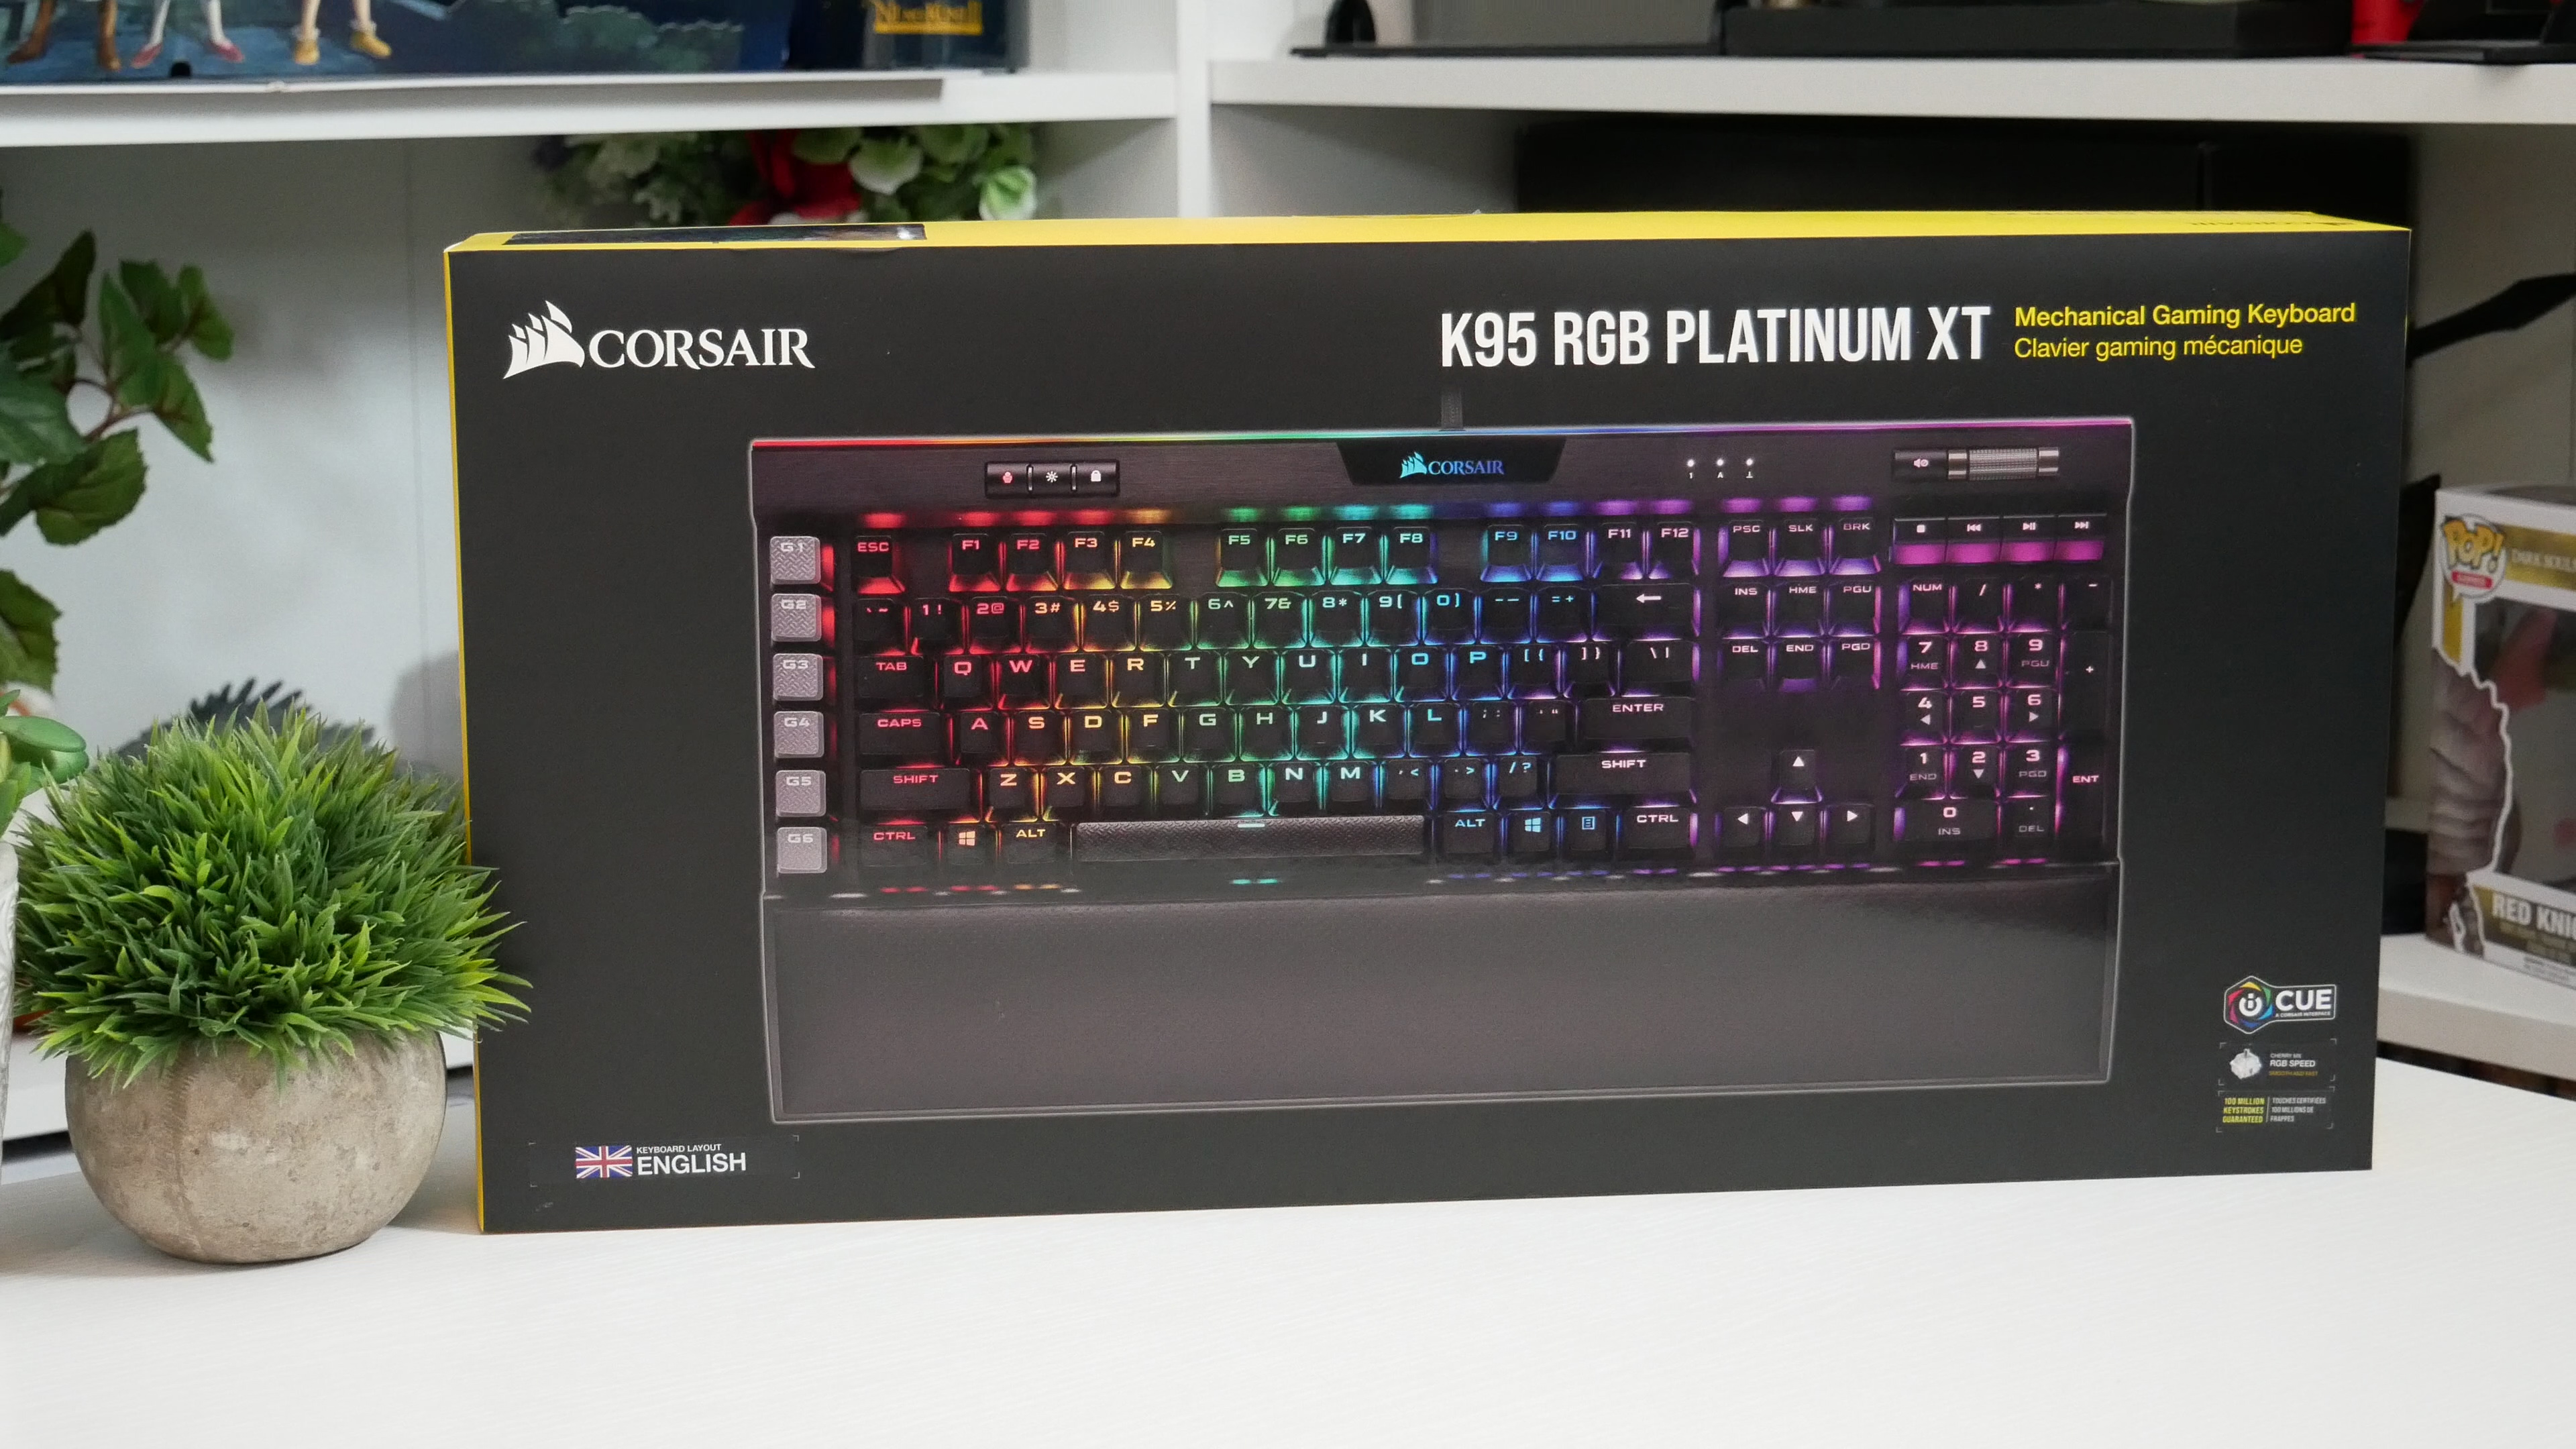 Corsair K95 Rgb Platinum Xt Keyboard Review Bit Tech Net